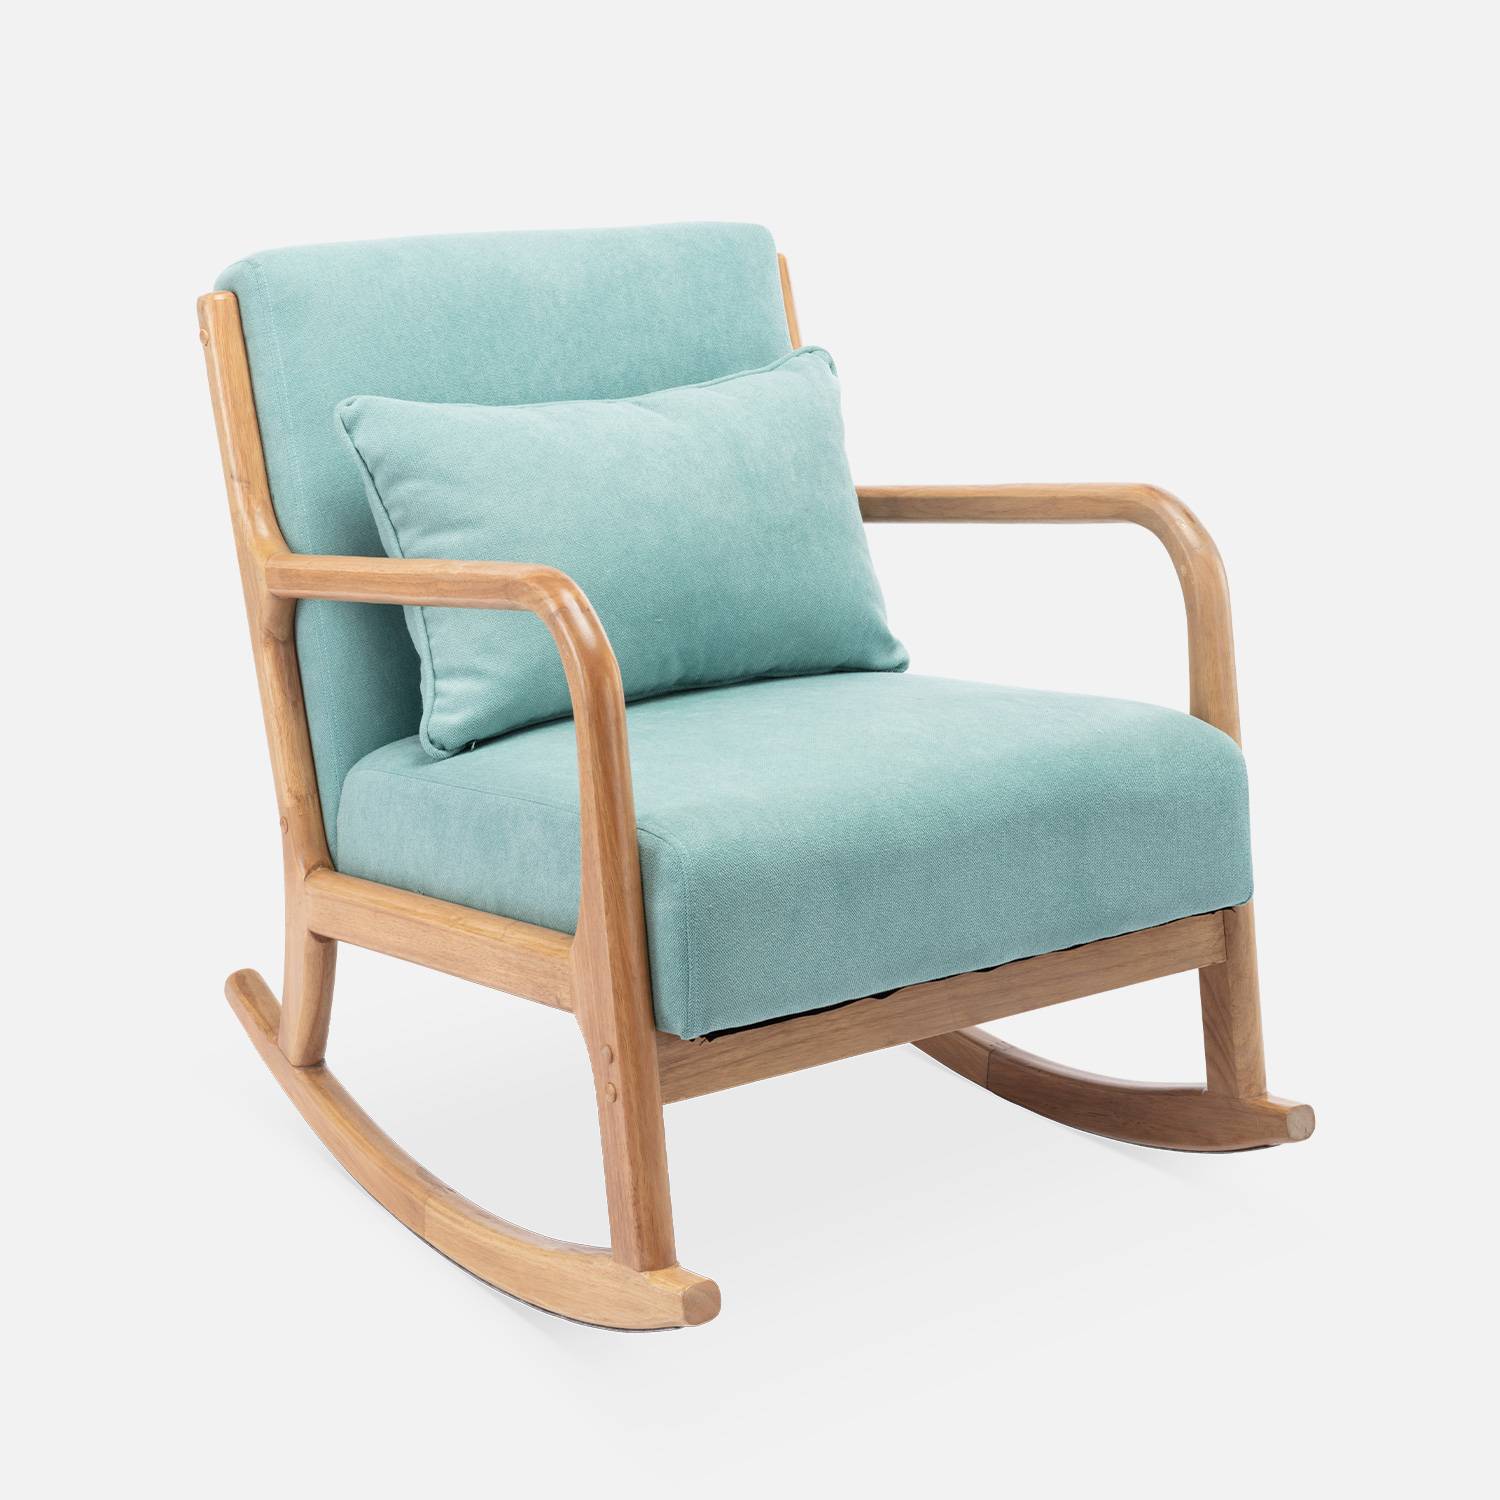 Cadeira de baloiço de design em madeira e tecido, 1 lugar, cadeira de baloiço escandinava, verde água,sweeek,Photo3